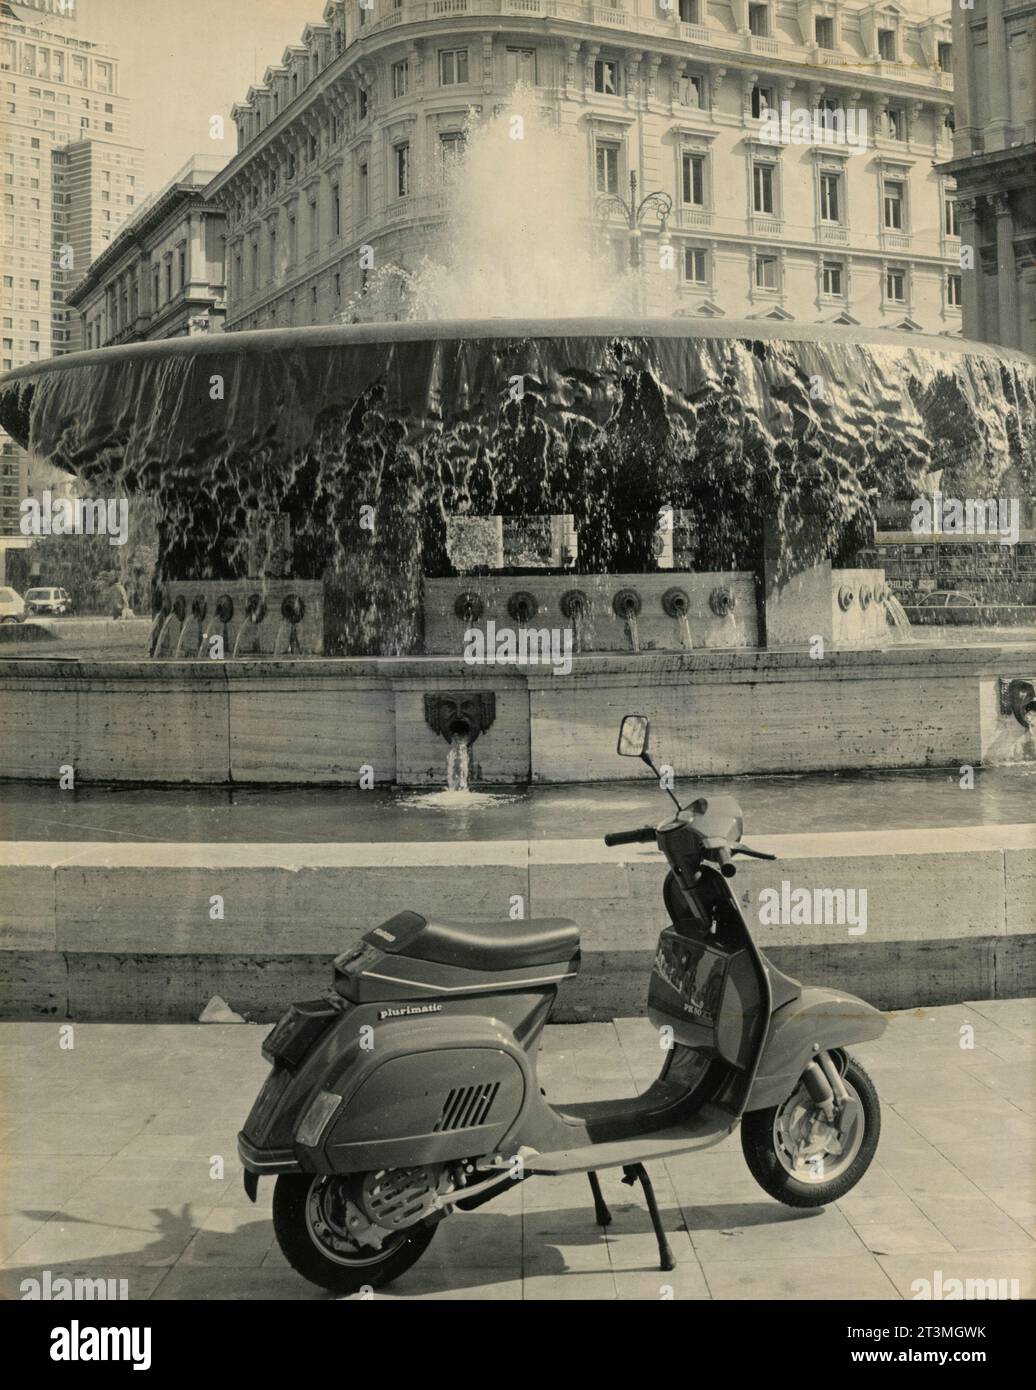 Piaggio Vespa 50 Plurimatic scooter, Italy 1986 Stock Photo